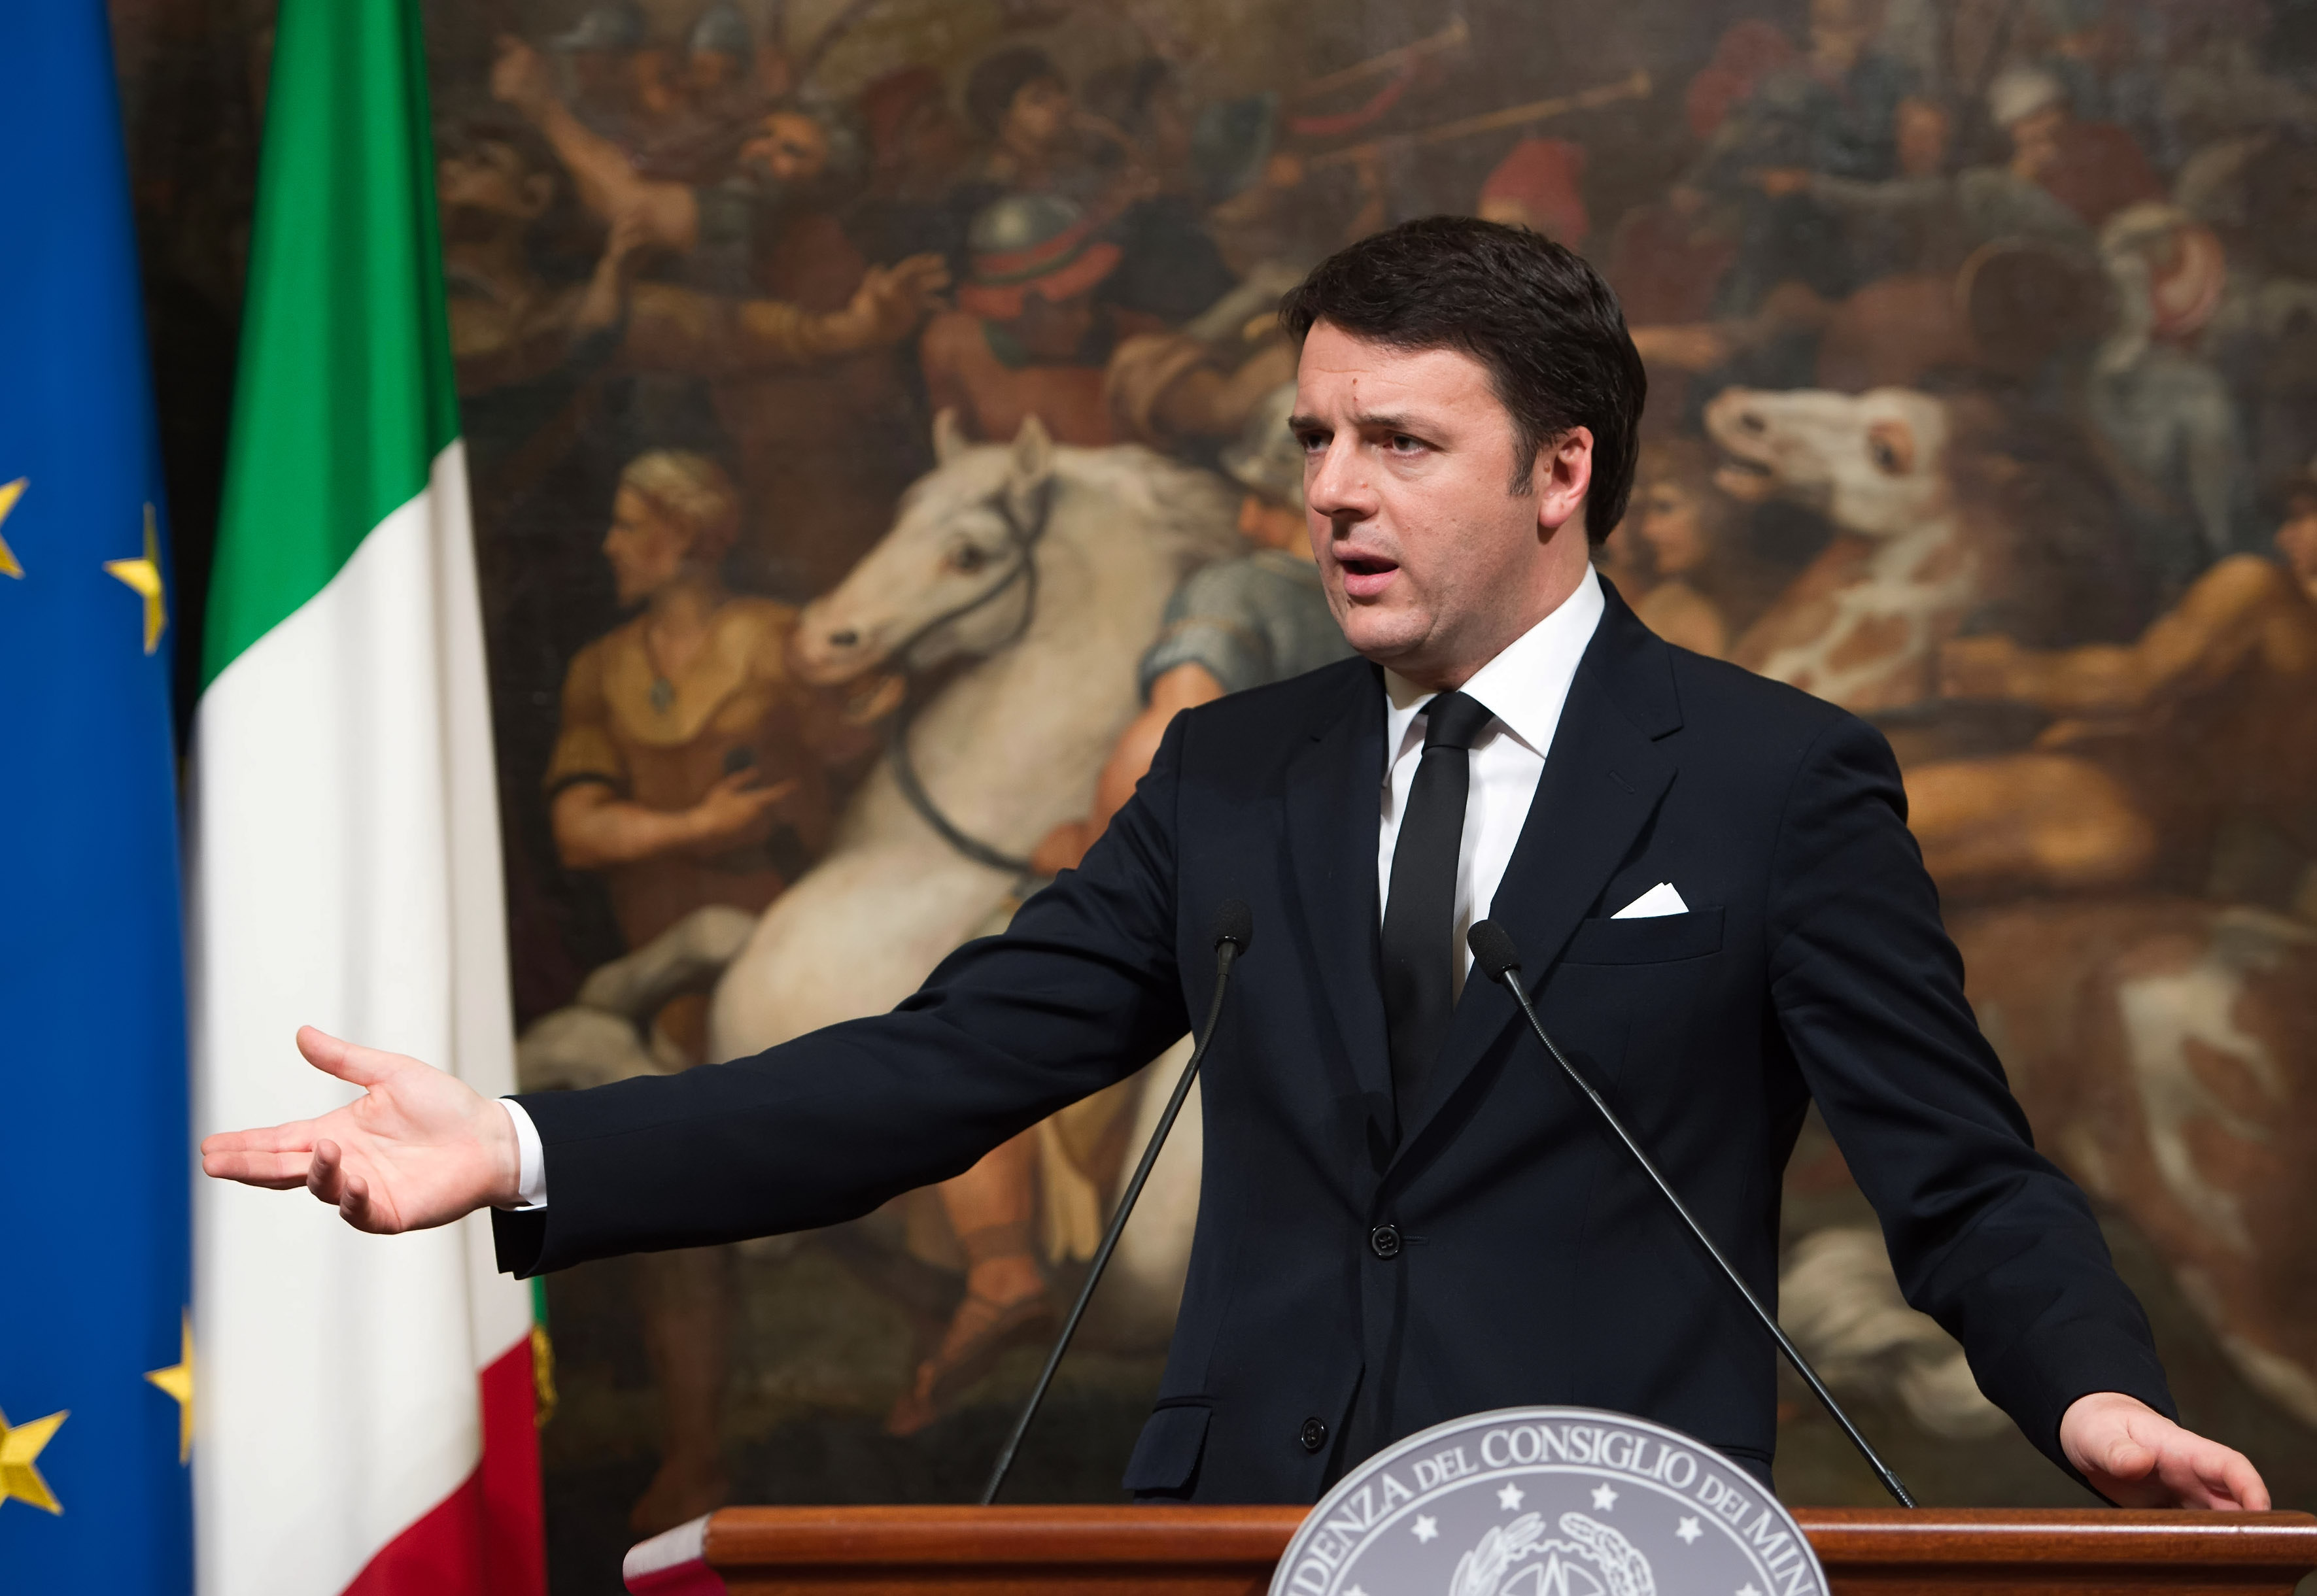 Ρέντσι: Η Ιταλία δεν είναι πλέον ο ασθενής της Ευρώπης